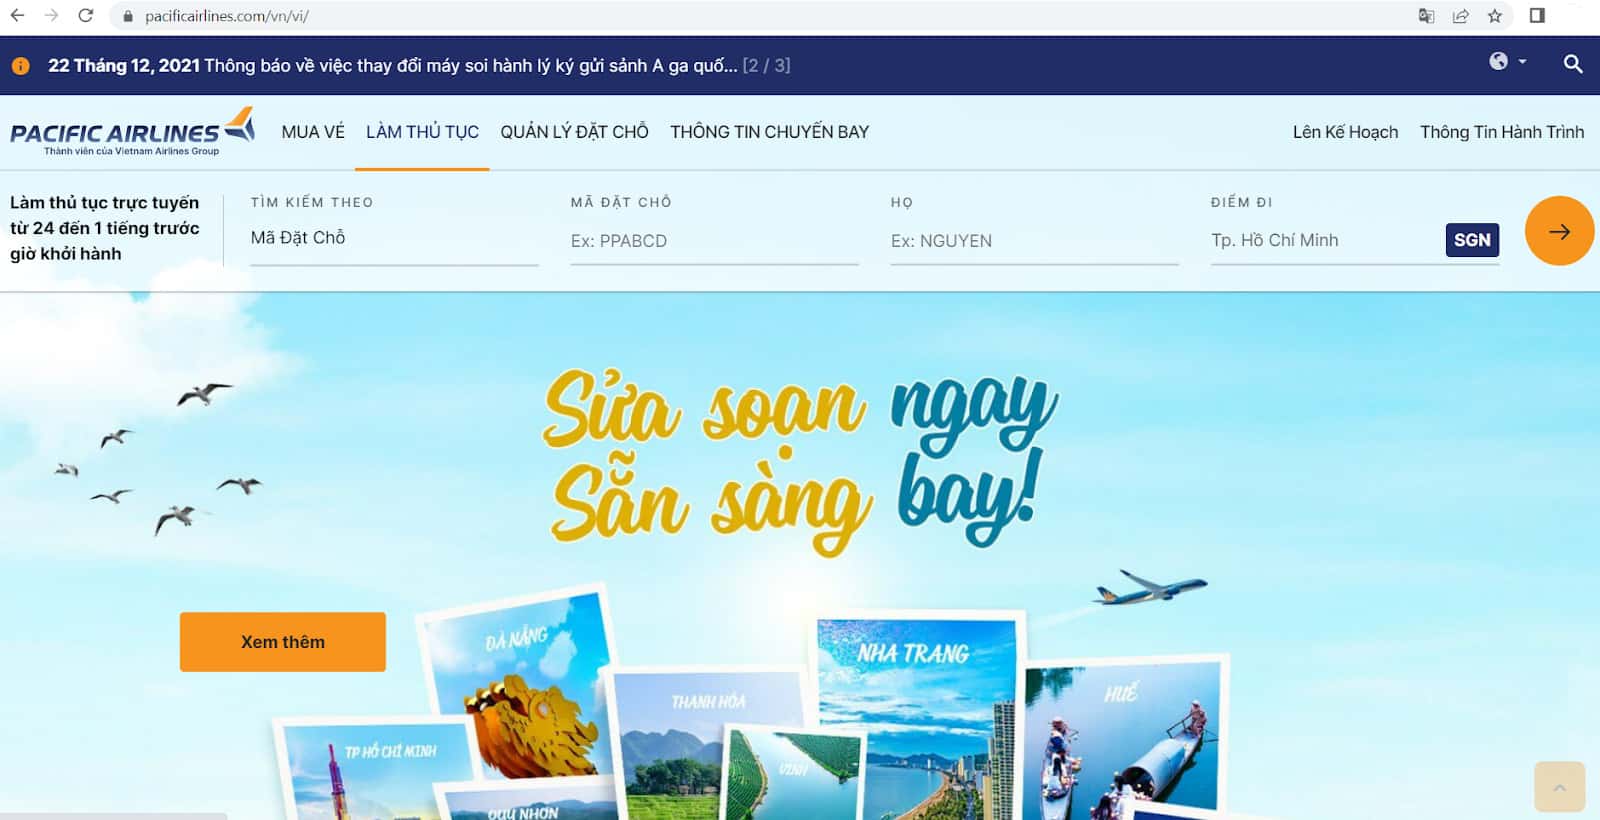 Hướng dẫn check in online Pacific Airlines - Làm thủ tục